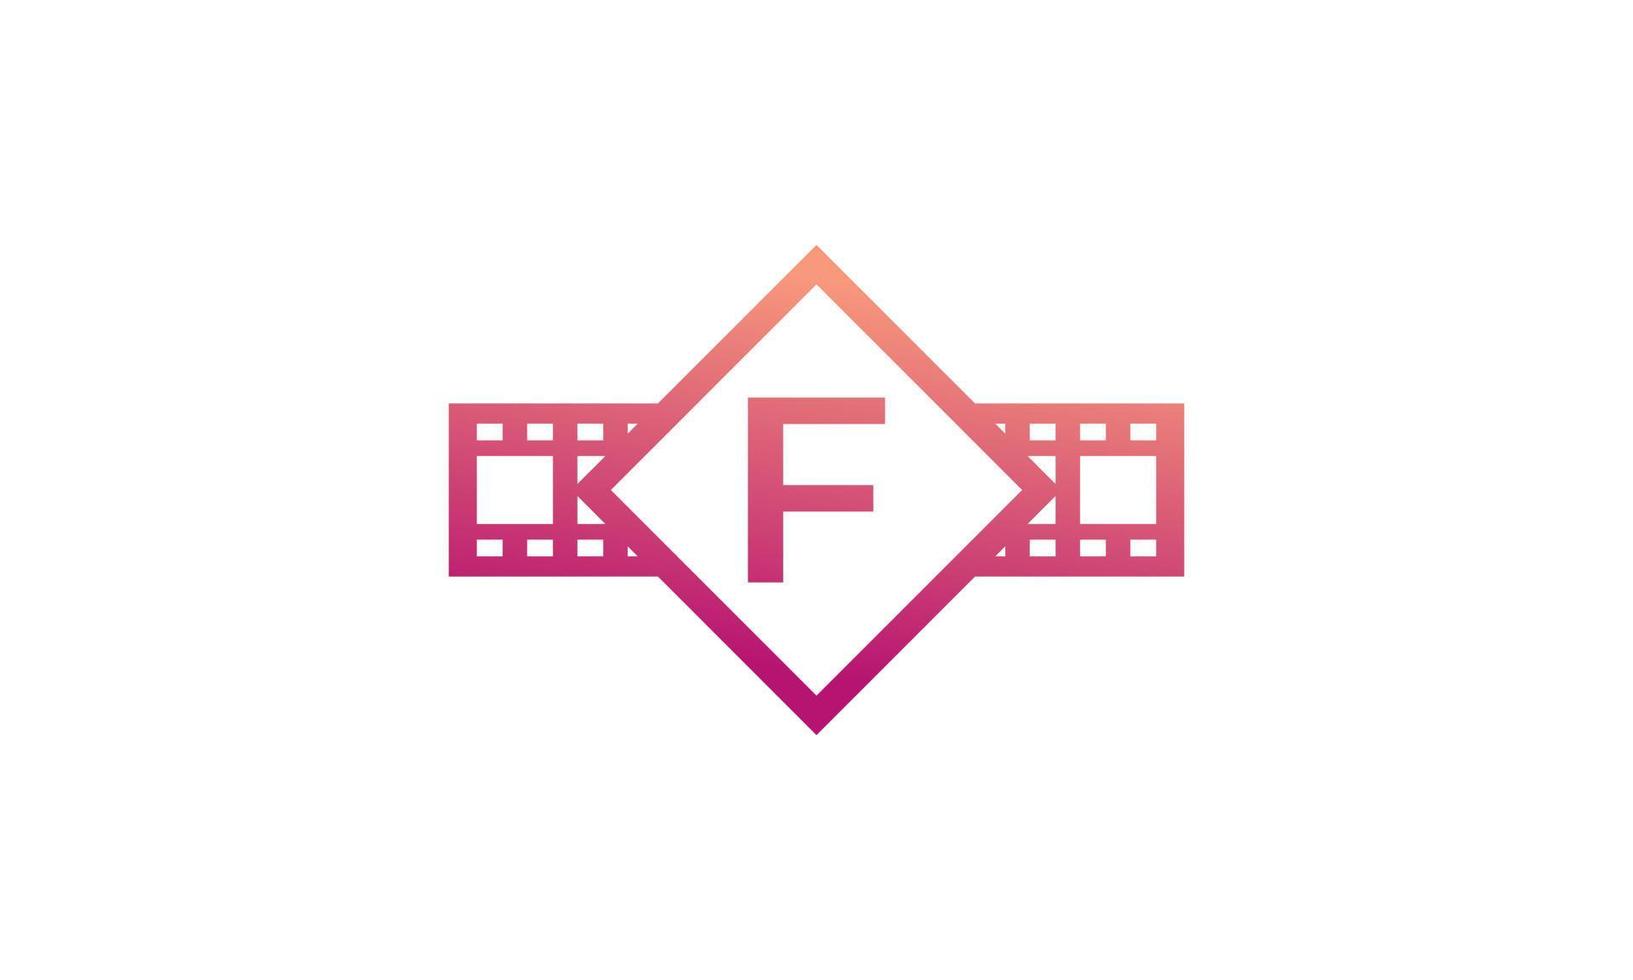 beginletter f vierkant met reel strepen filmstrip voor film film bioscoop productie studio logo inspiratie vector